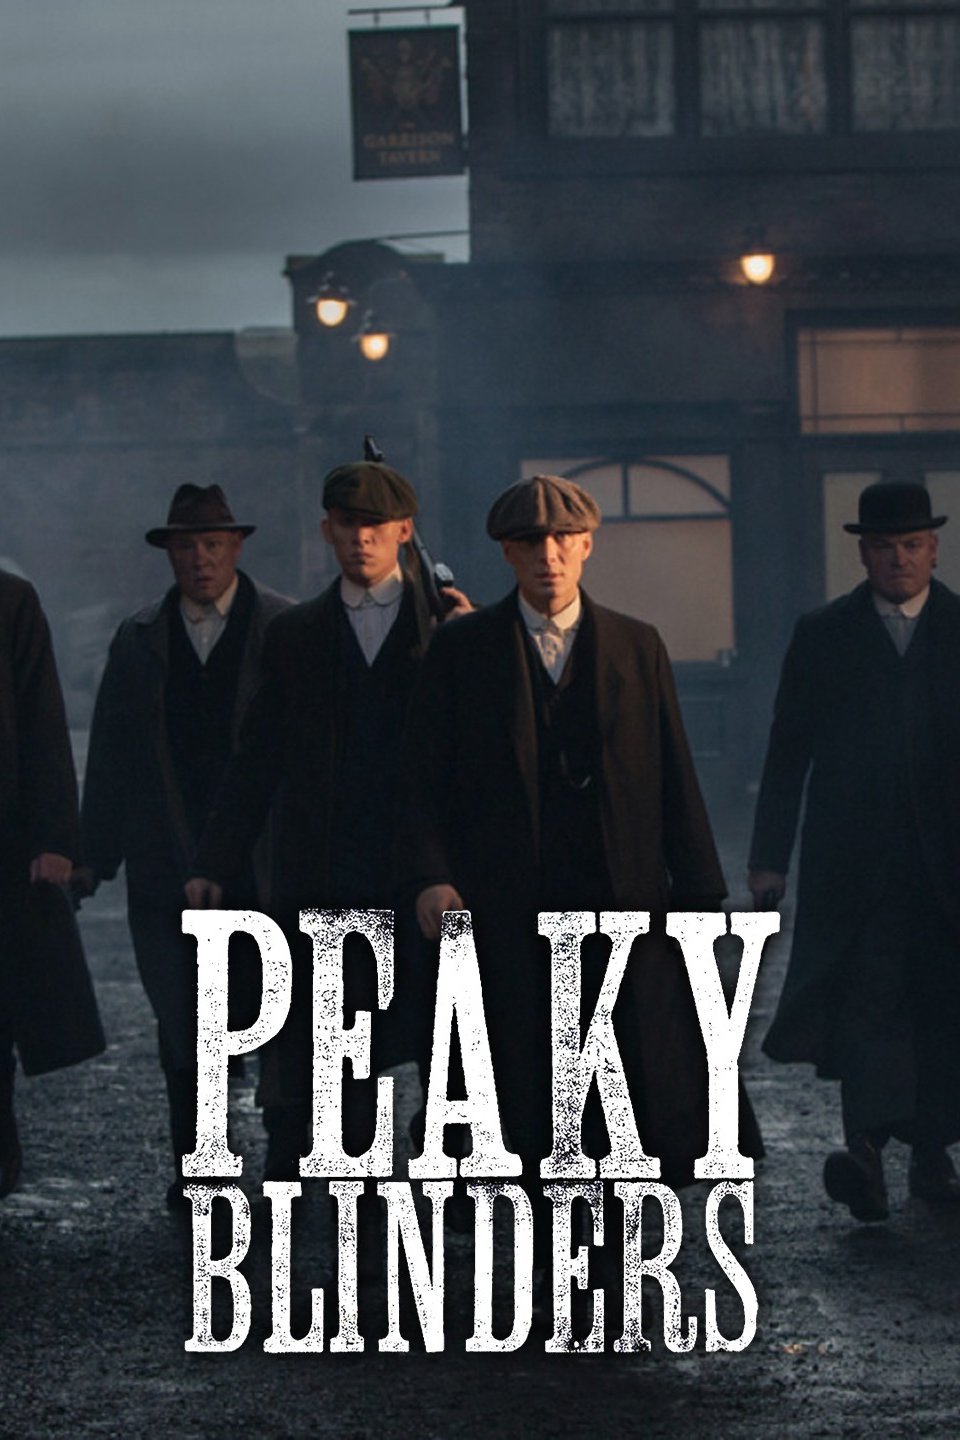 Peaky Blinders Season 1 Subtitles Download